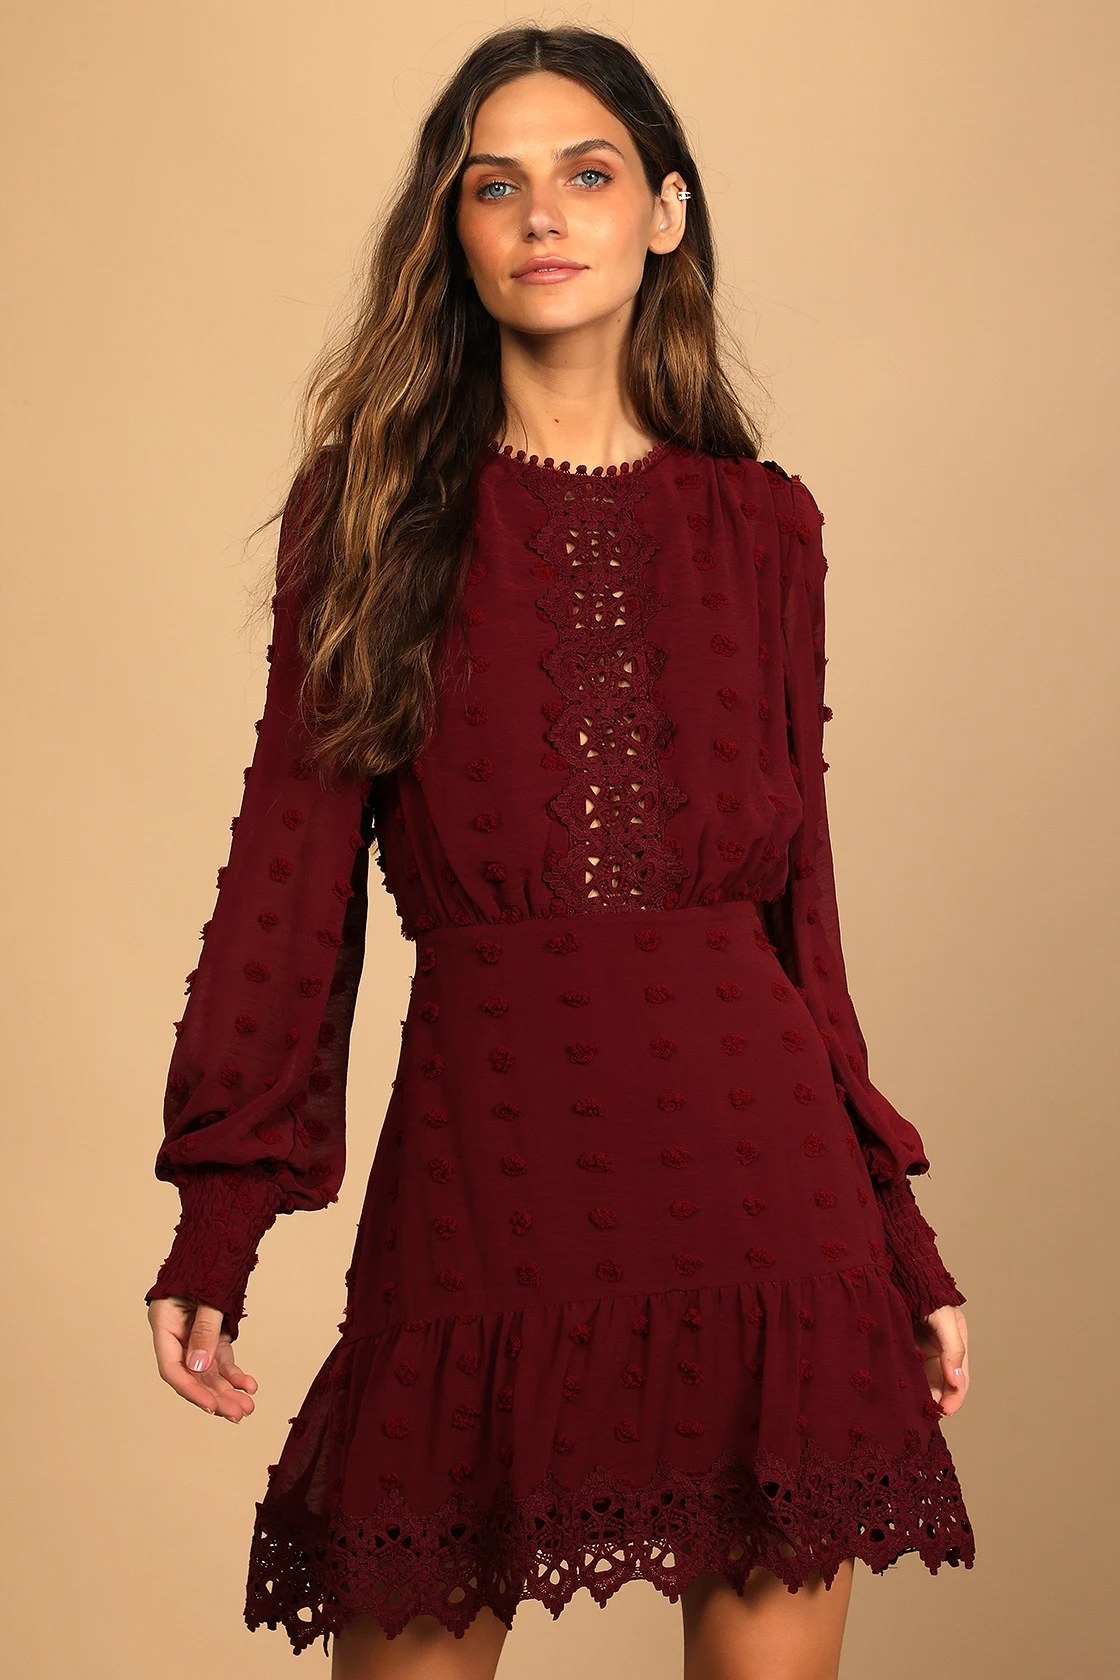 Model wearing wine colored dress